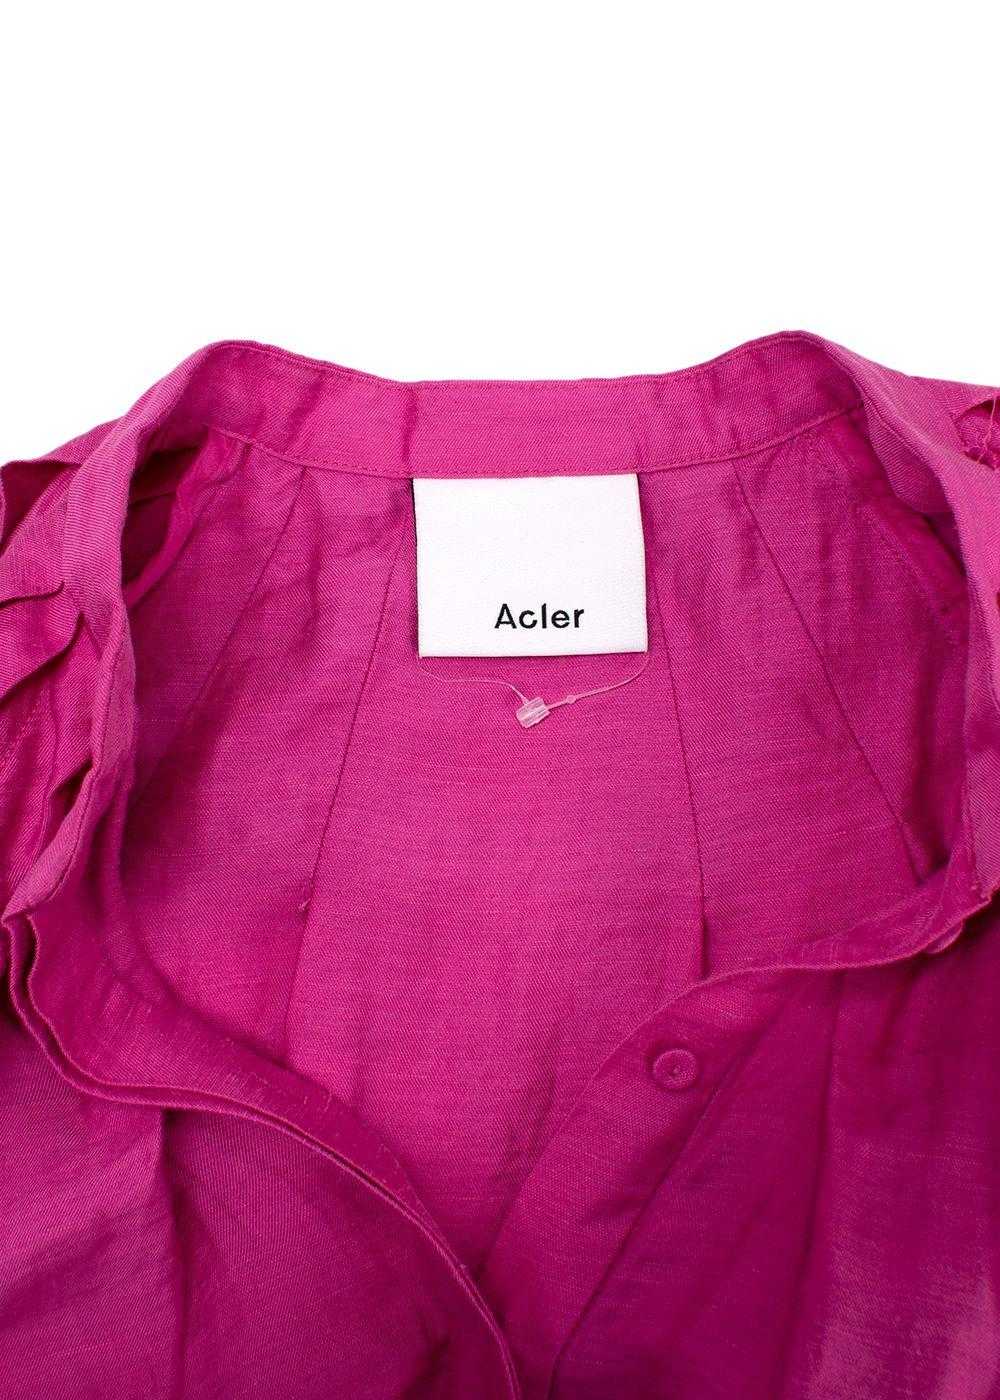 Acler Acler Linen-Blend Cranhurst Midi Dress - image 5